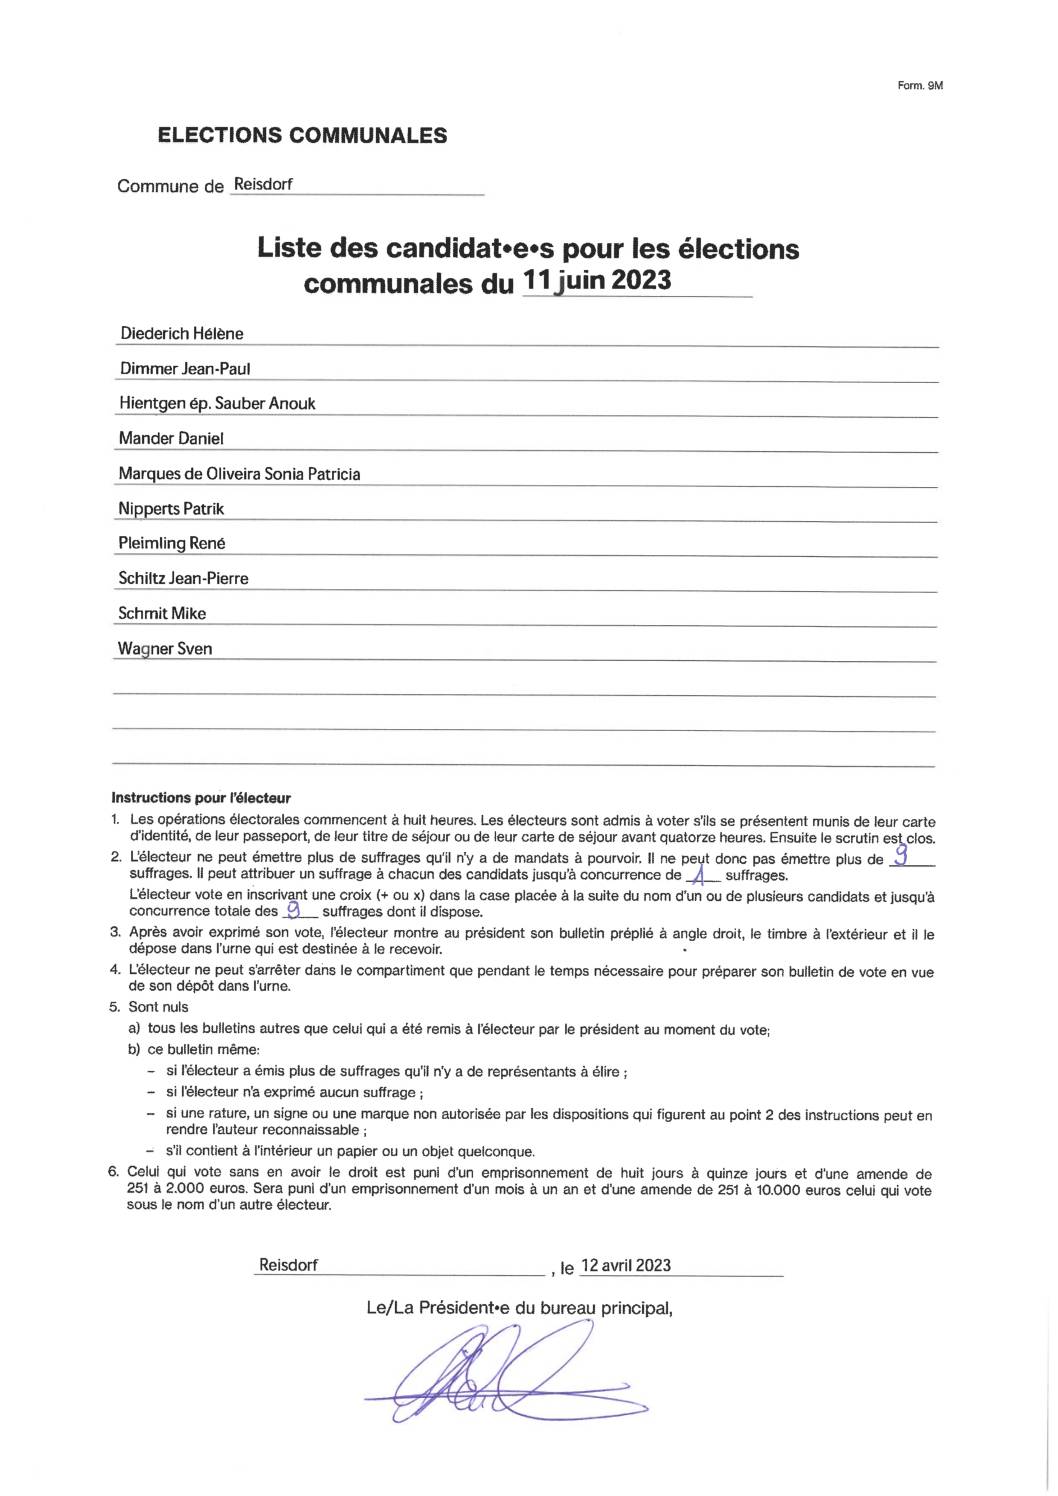 Liste des candidat(e)s pour les élections communales du 11 juin 2023